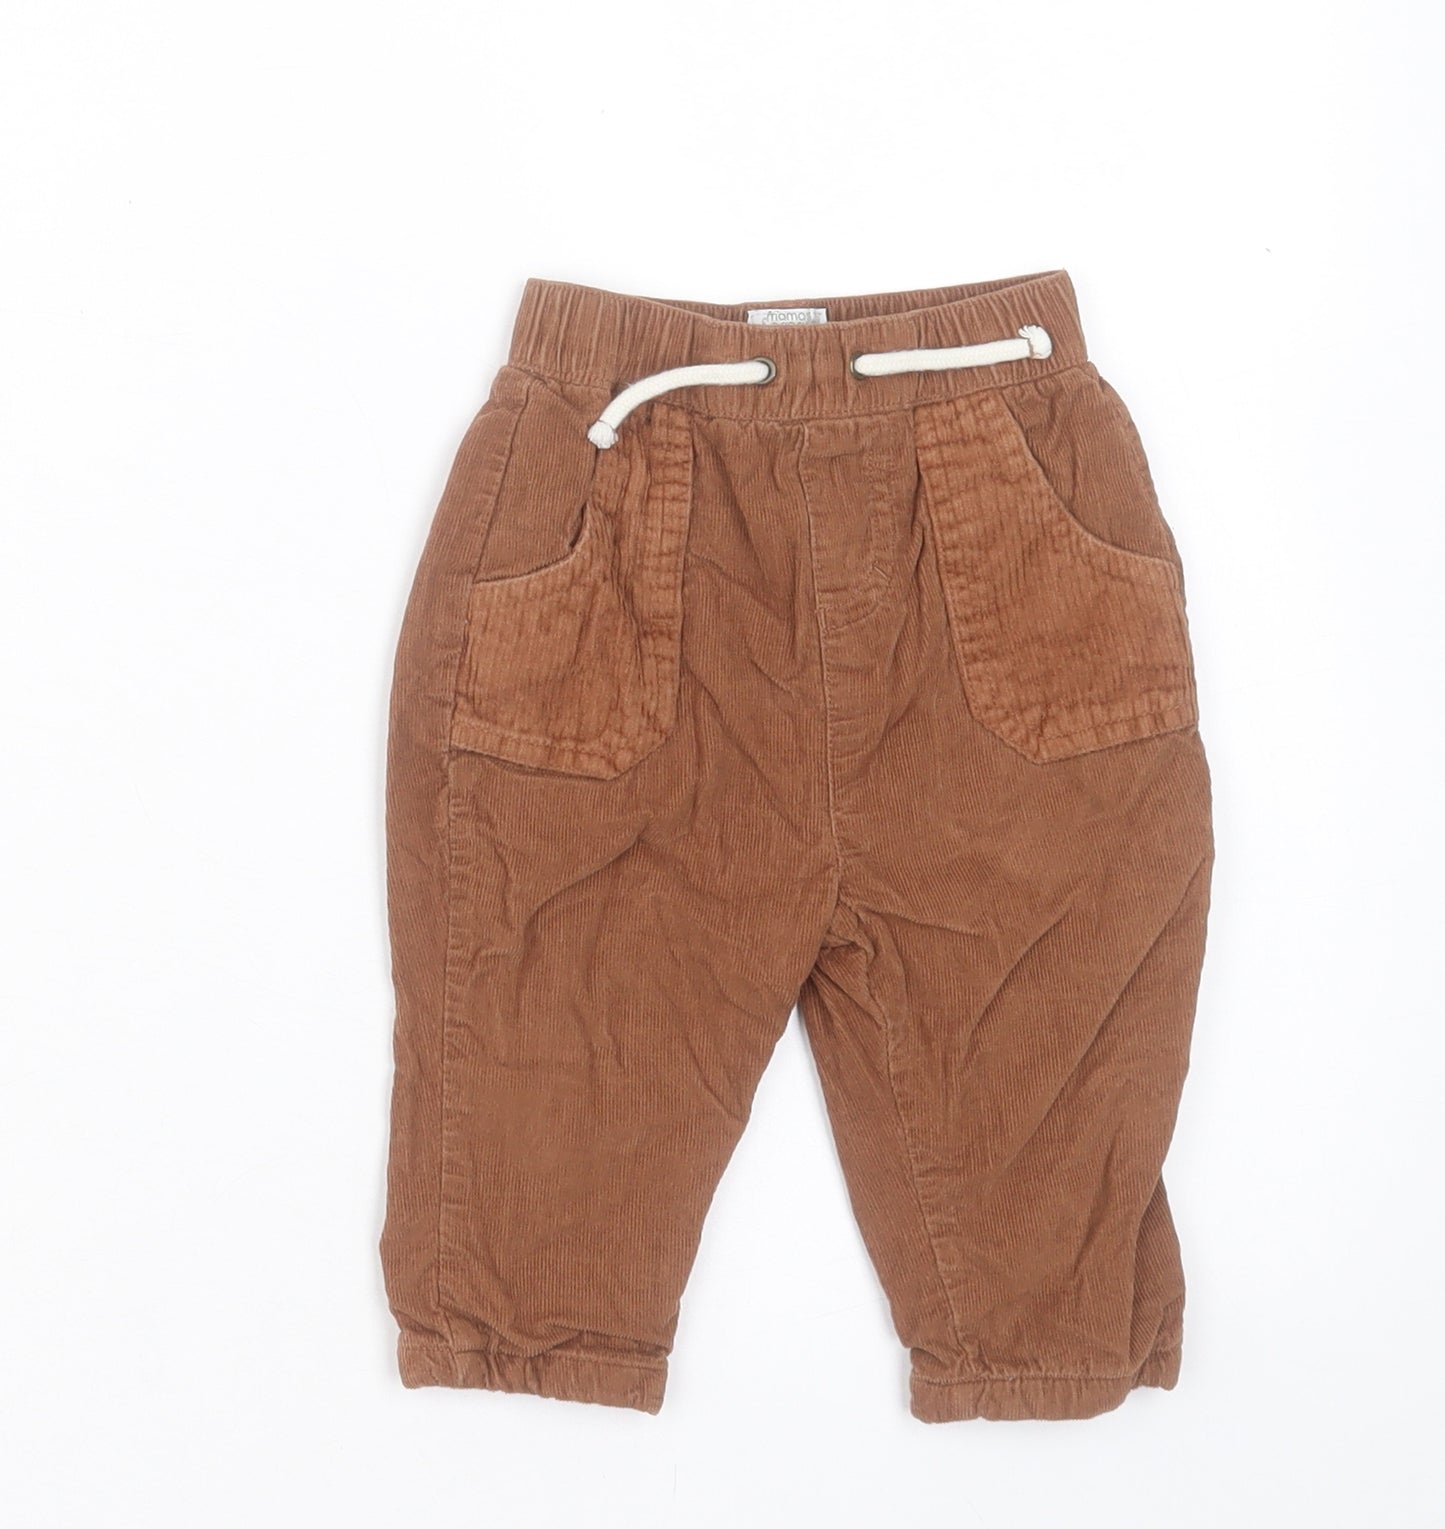 mamas & papas Boys Brown Cotton Capri Trousers Size 6-9 Months Drawstring